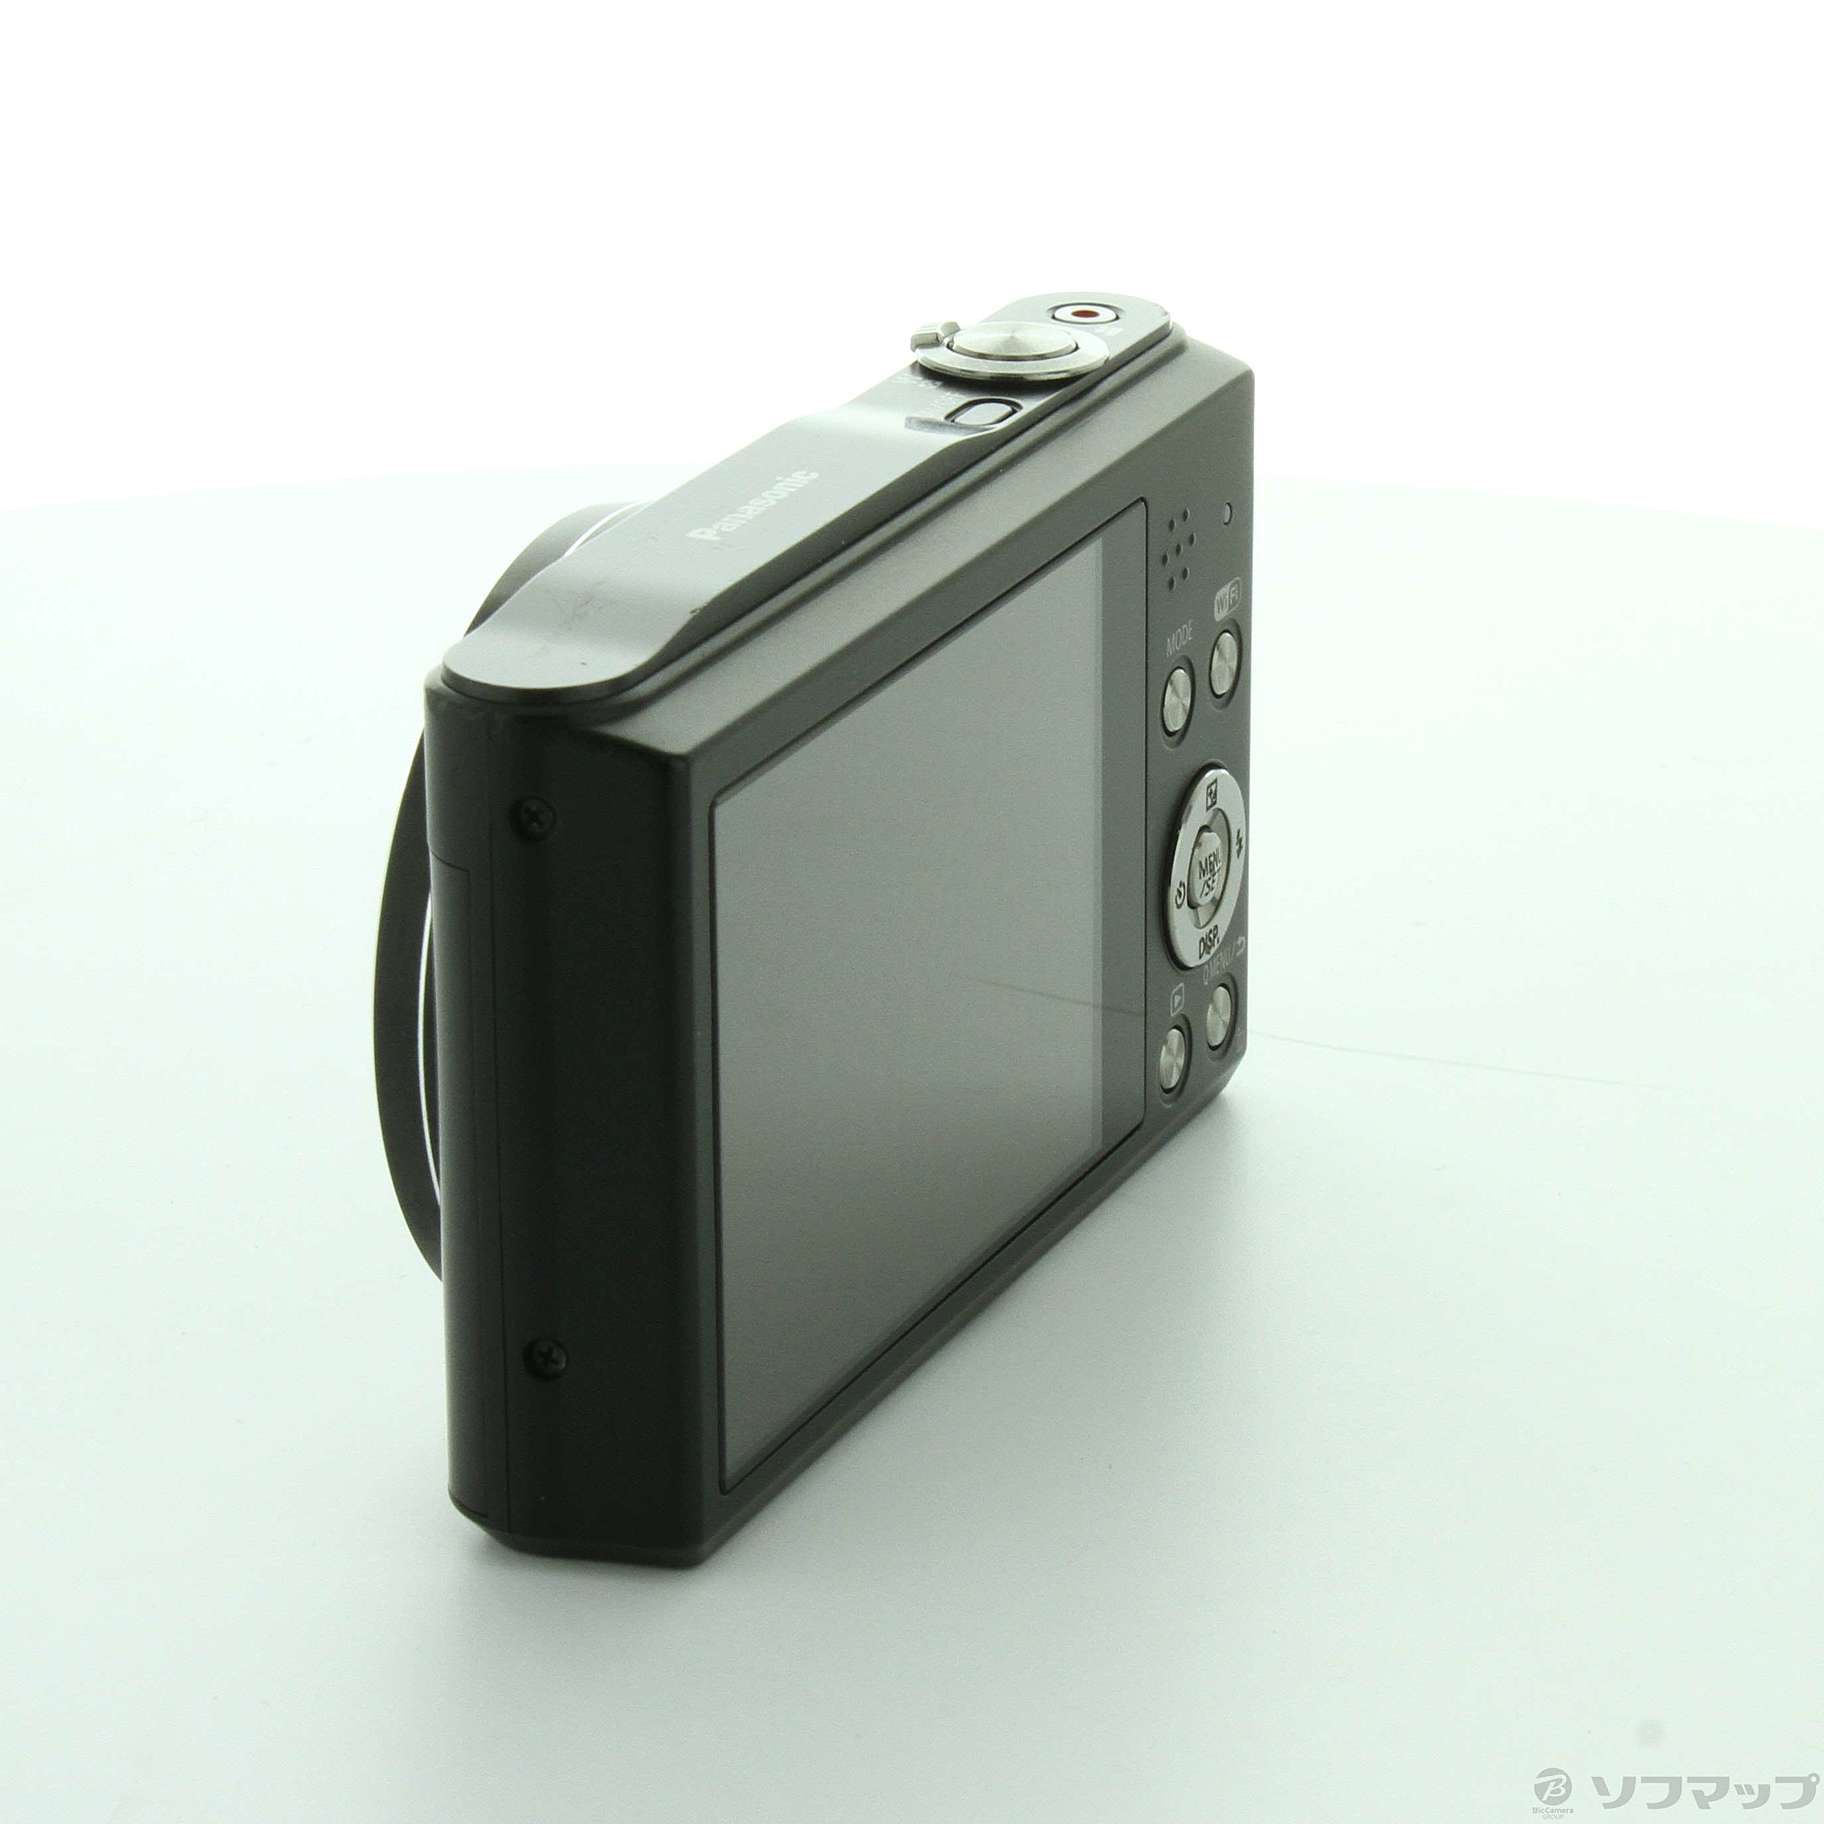 正規品爆買い【超美品】パナソニックLUMIX DMC-SZ8 外箱バッテリーケーブル付き デジタルカメラ